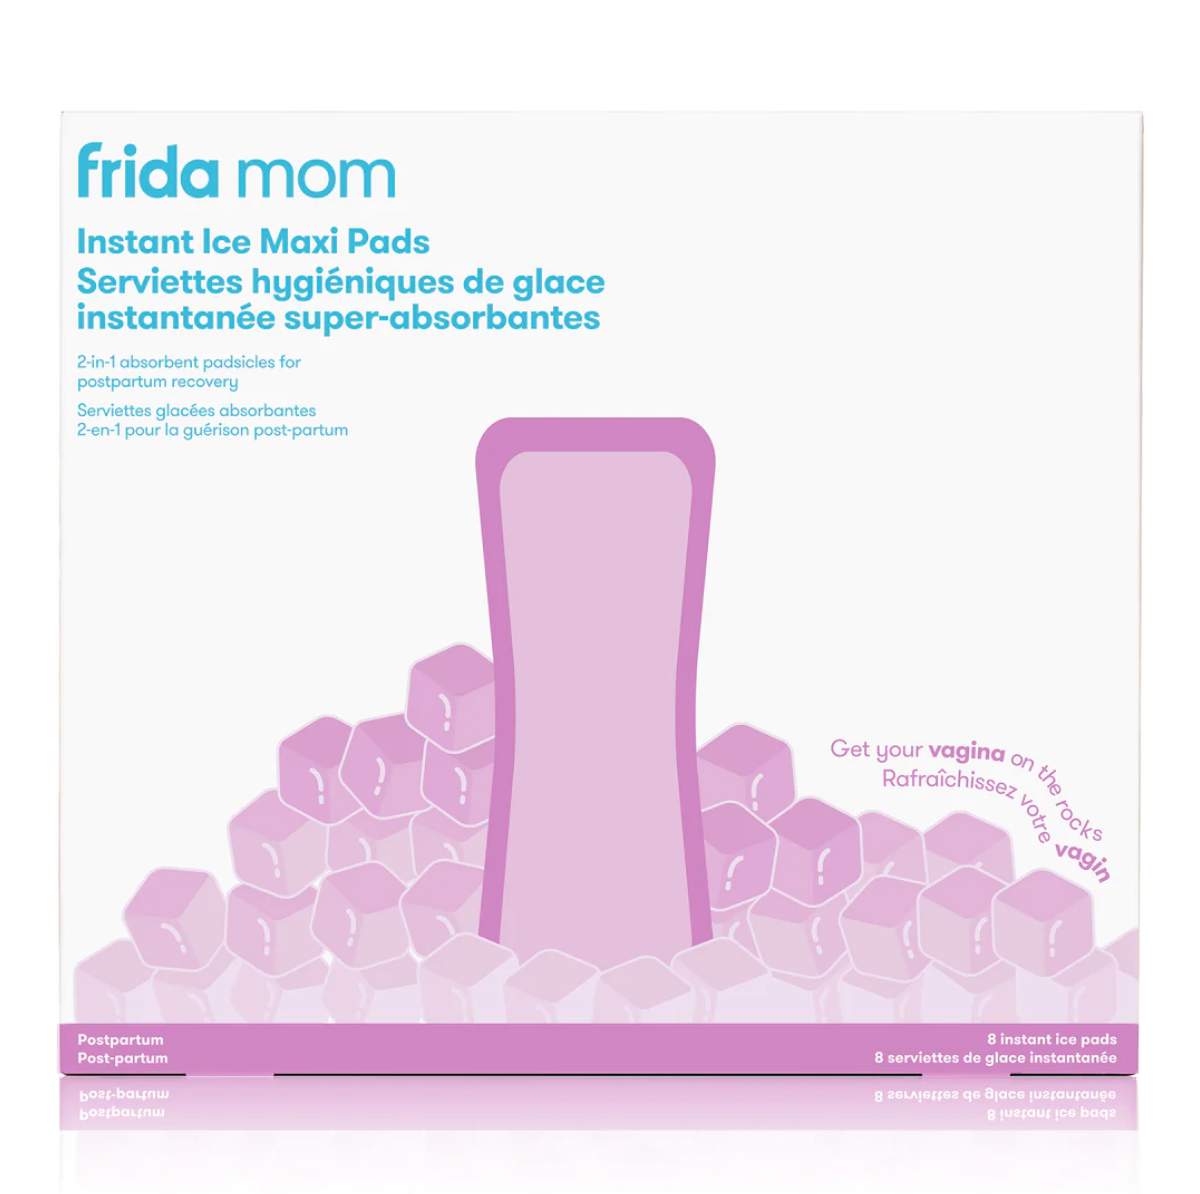 Serviettes hygiéniques de glace instantanée super-absorbantes Frida Mom